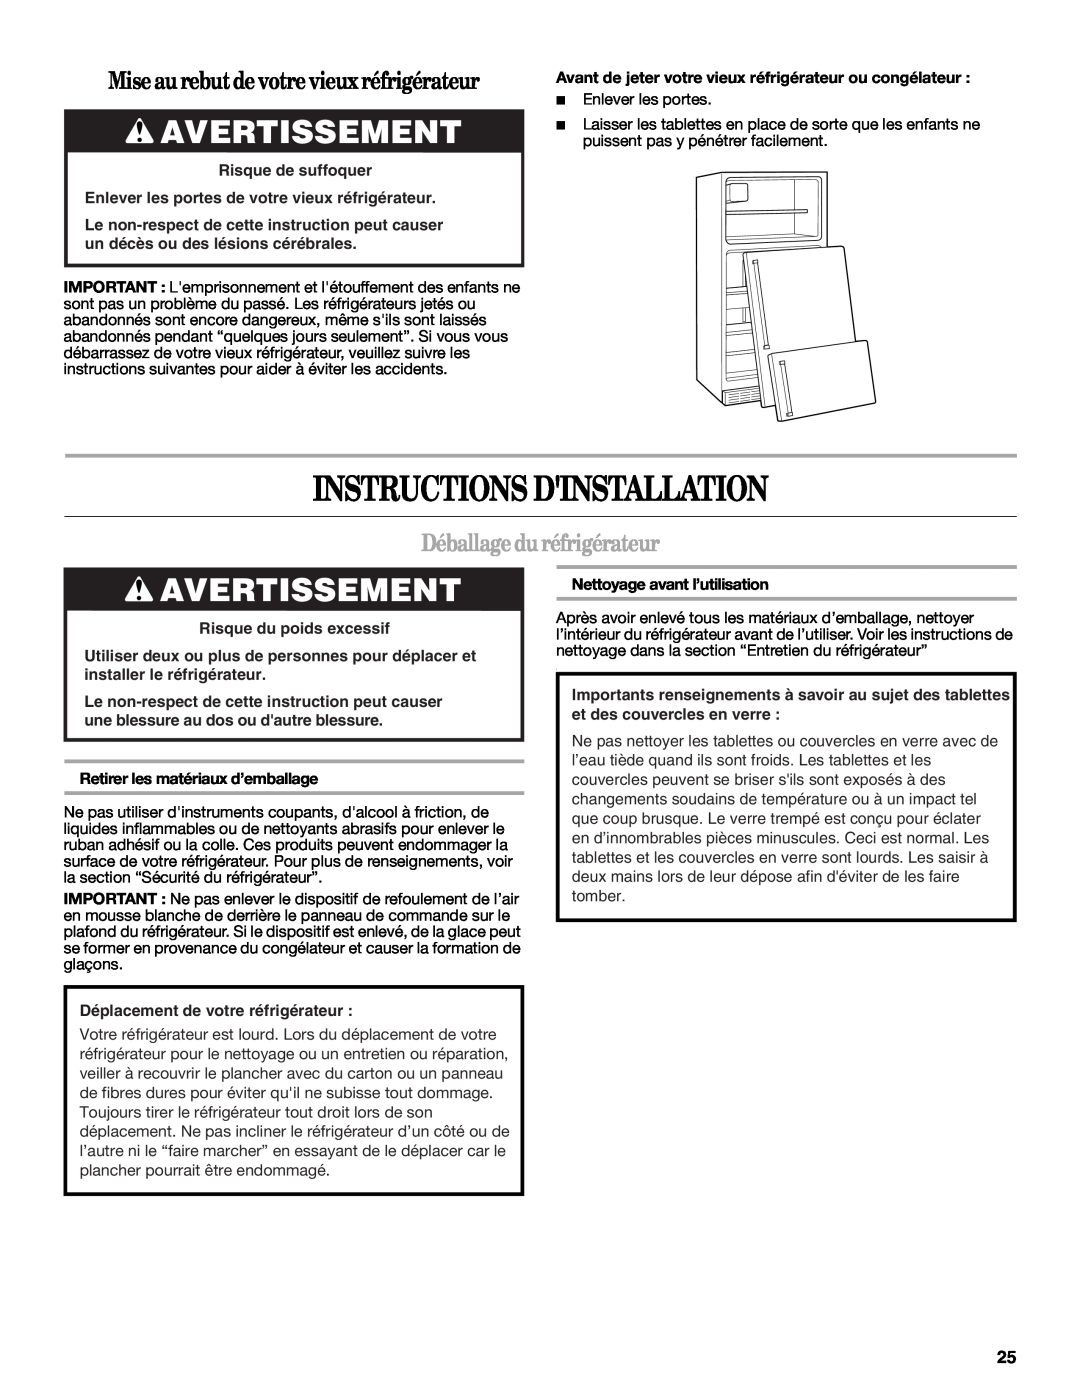 Whirlpool W10315410A Instructions Dinstallation, Avertissement, Mise au rebutde votre vieux réfrigérateur 